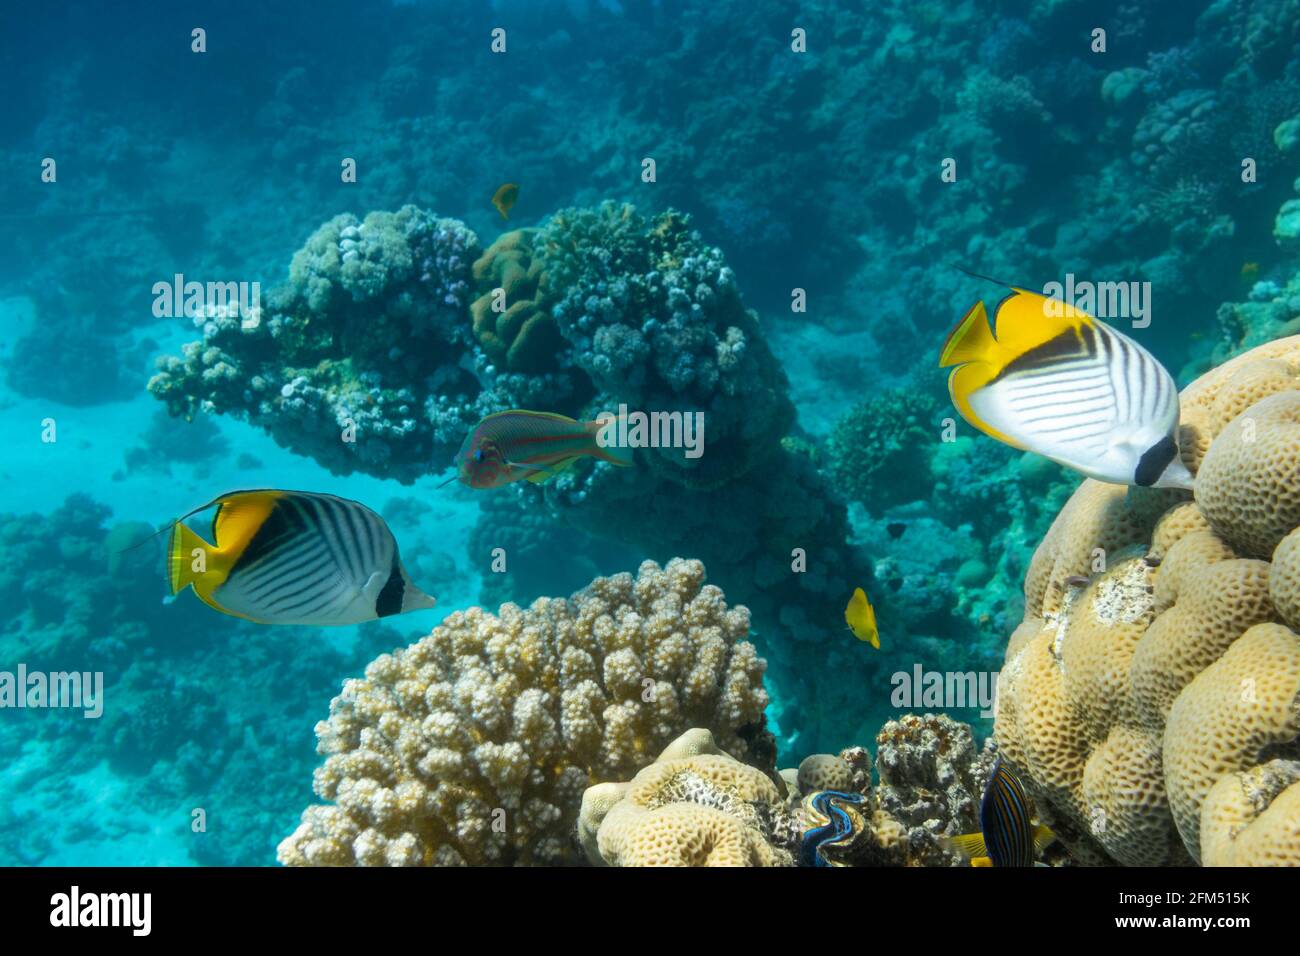 Pesce farfalla vicino alla barriera corallina nell'oceano. Frittella con strisce nere, gialle e bianche. Pesci tropicali colorati nel Mar Rosso, Egypt Foto Stock